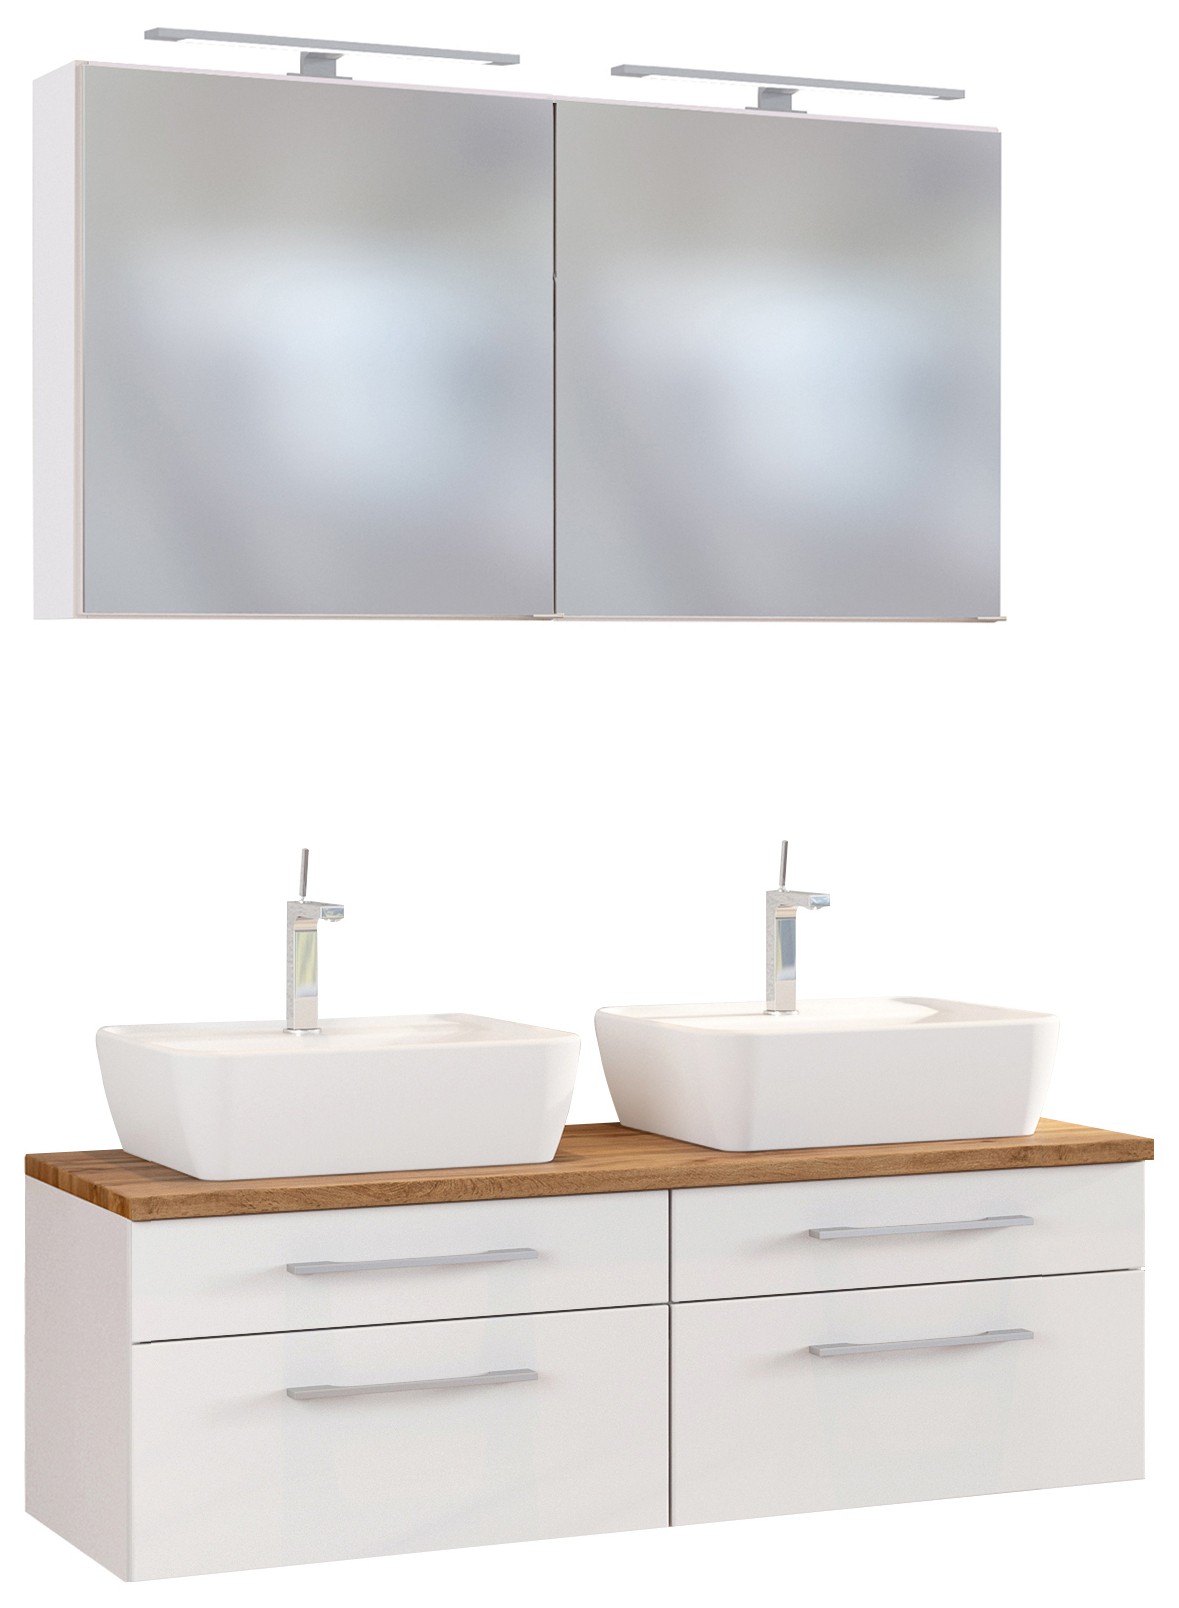 Held Möbel Waschtisch-Set Davos 120 cm mit Spiegelschrank weiß/matt weiß  jetzt kaufen bei